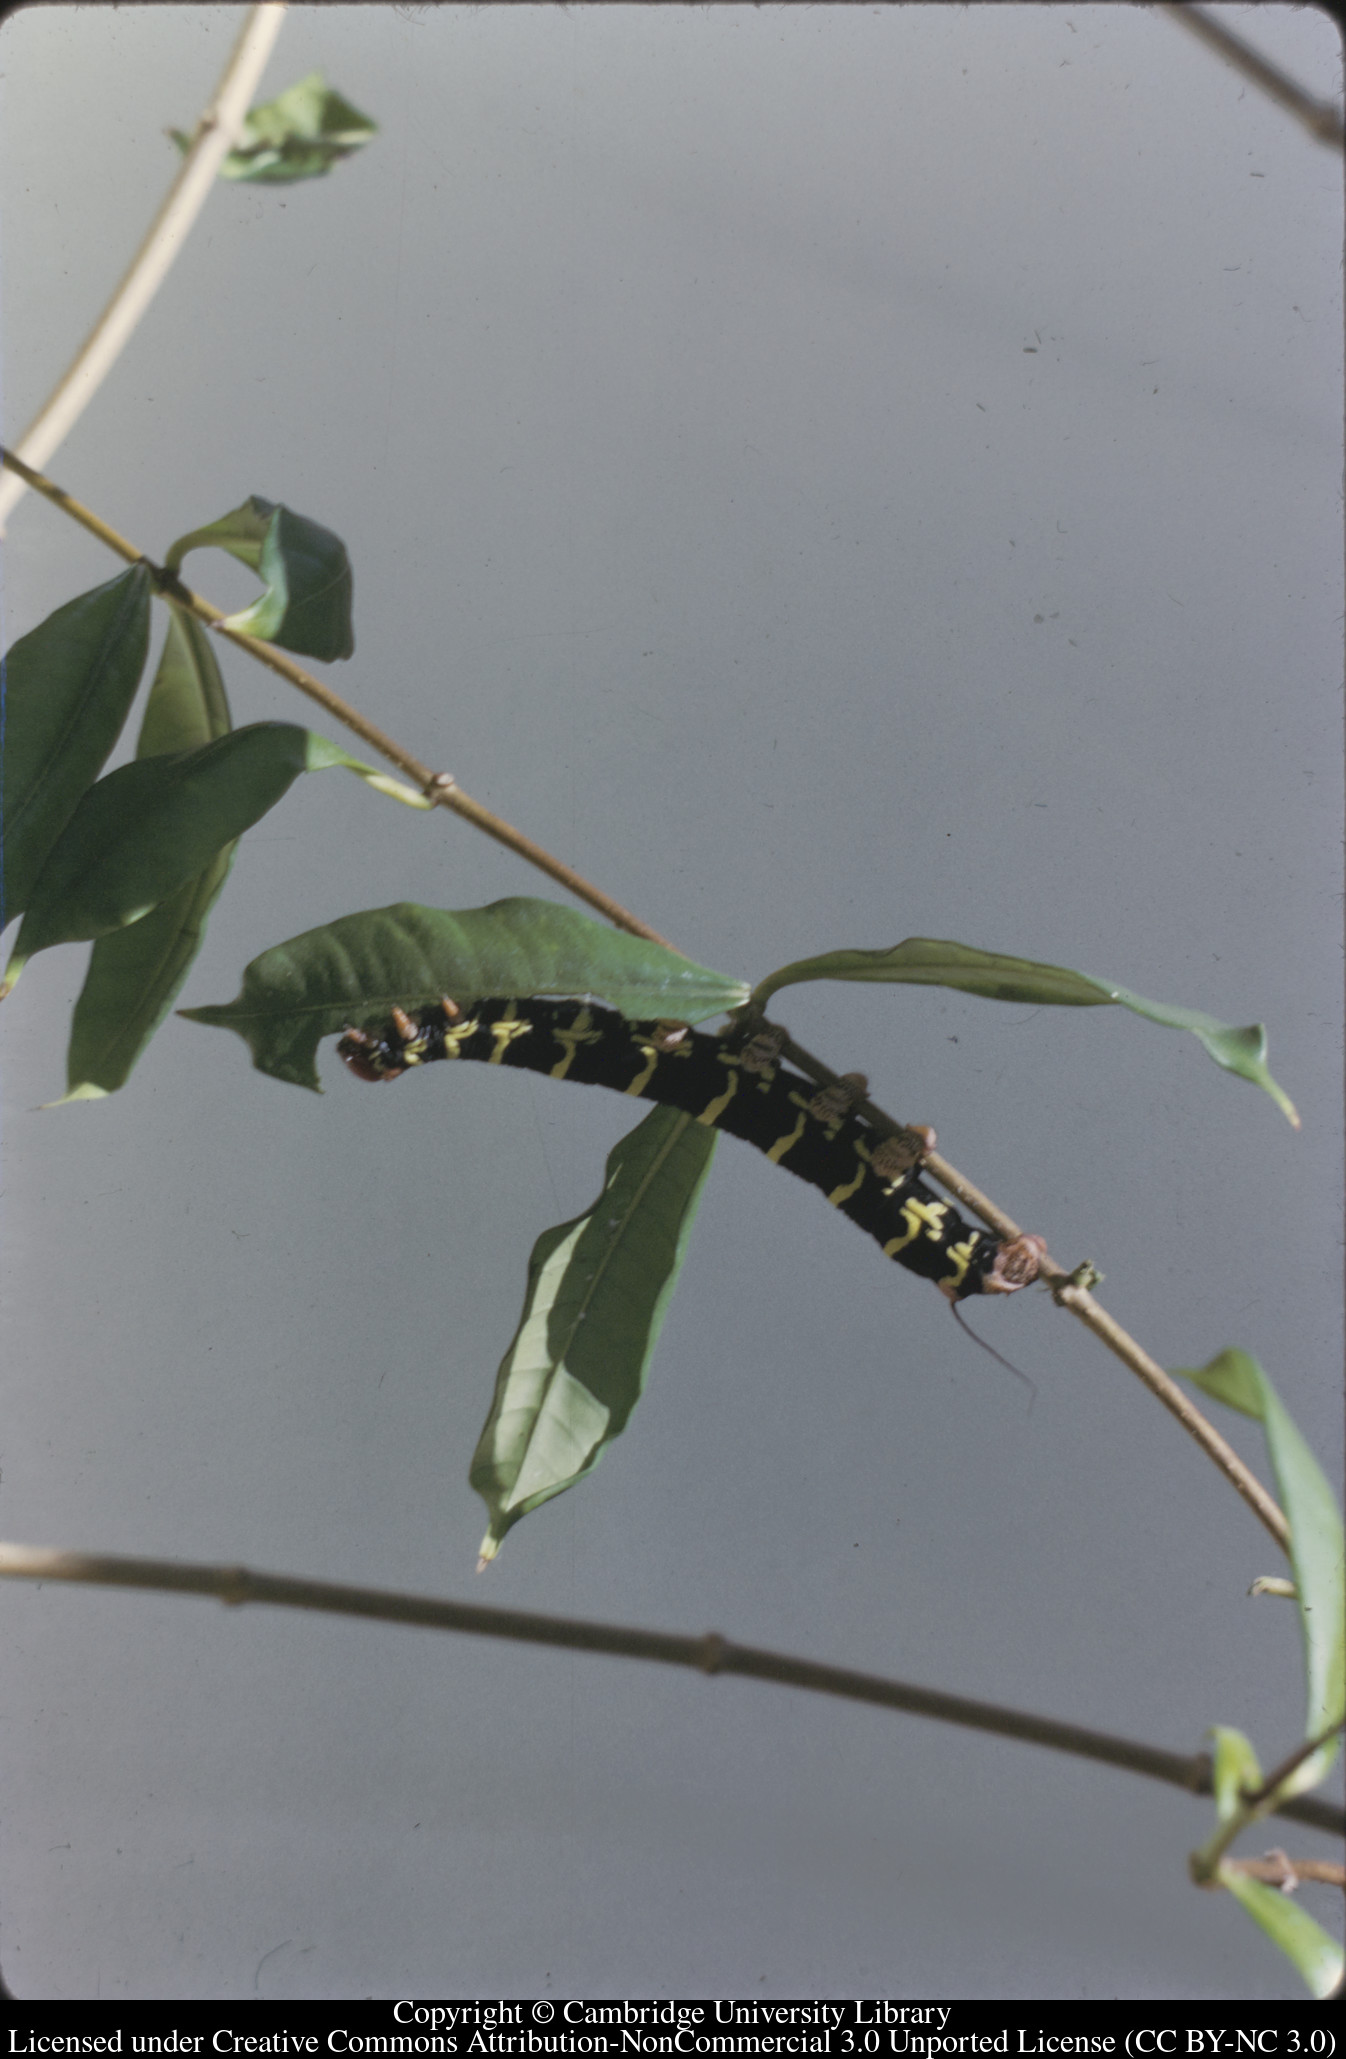 Frangipani caterpillar, C [Ciceron], 1972-09